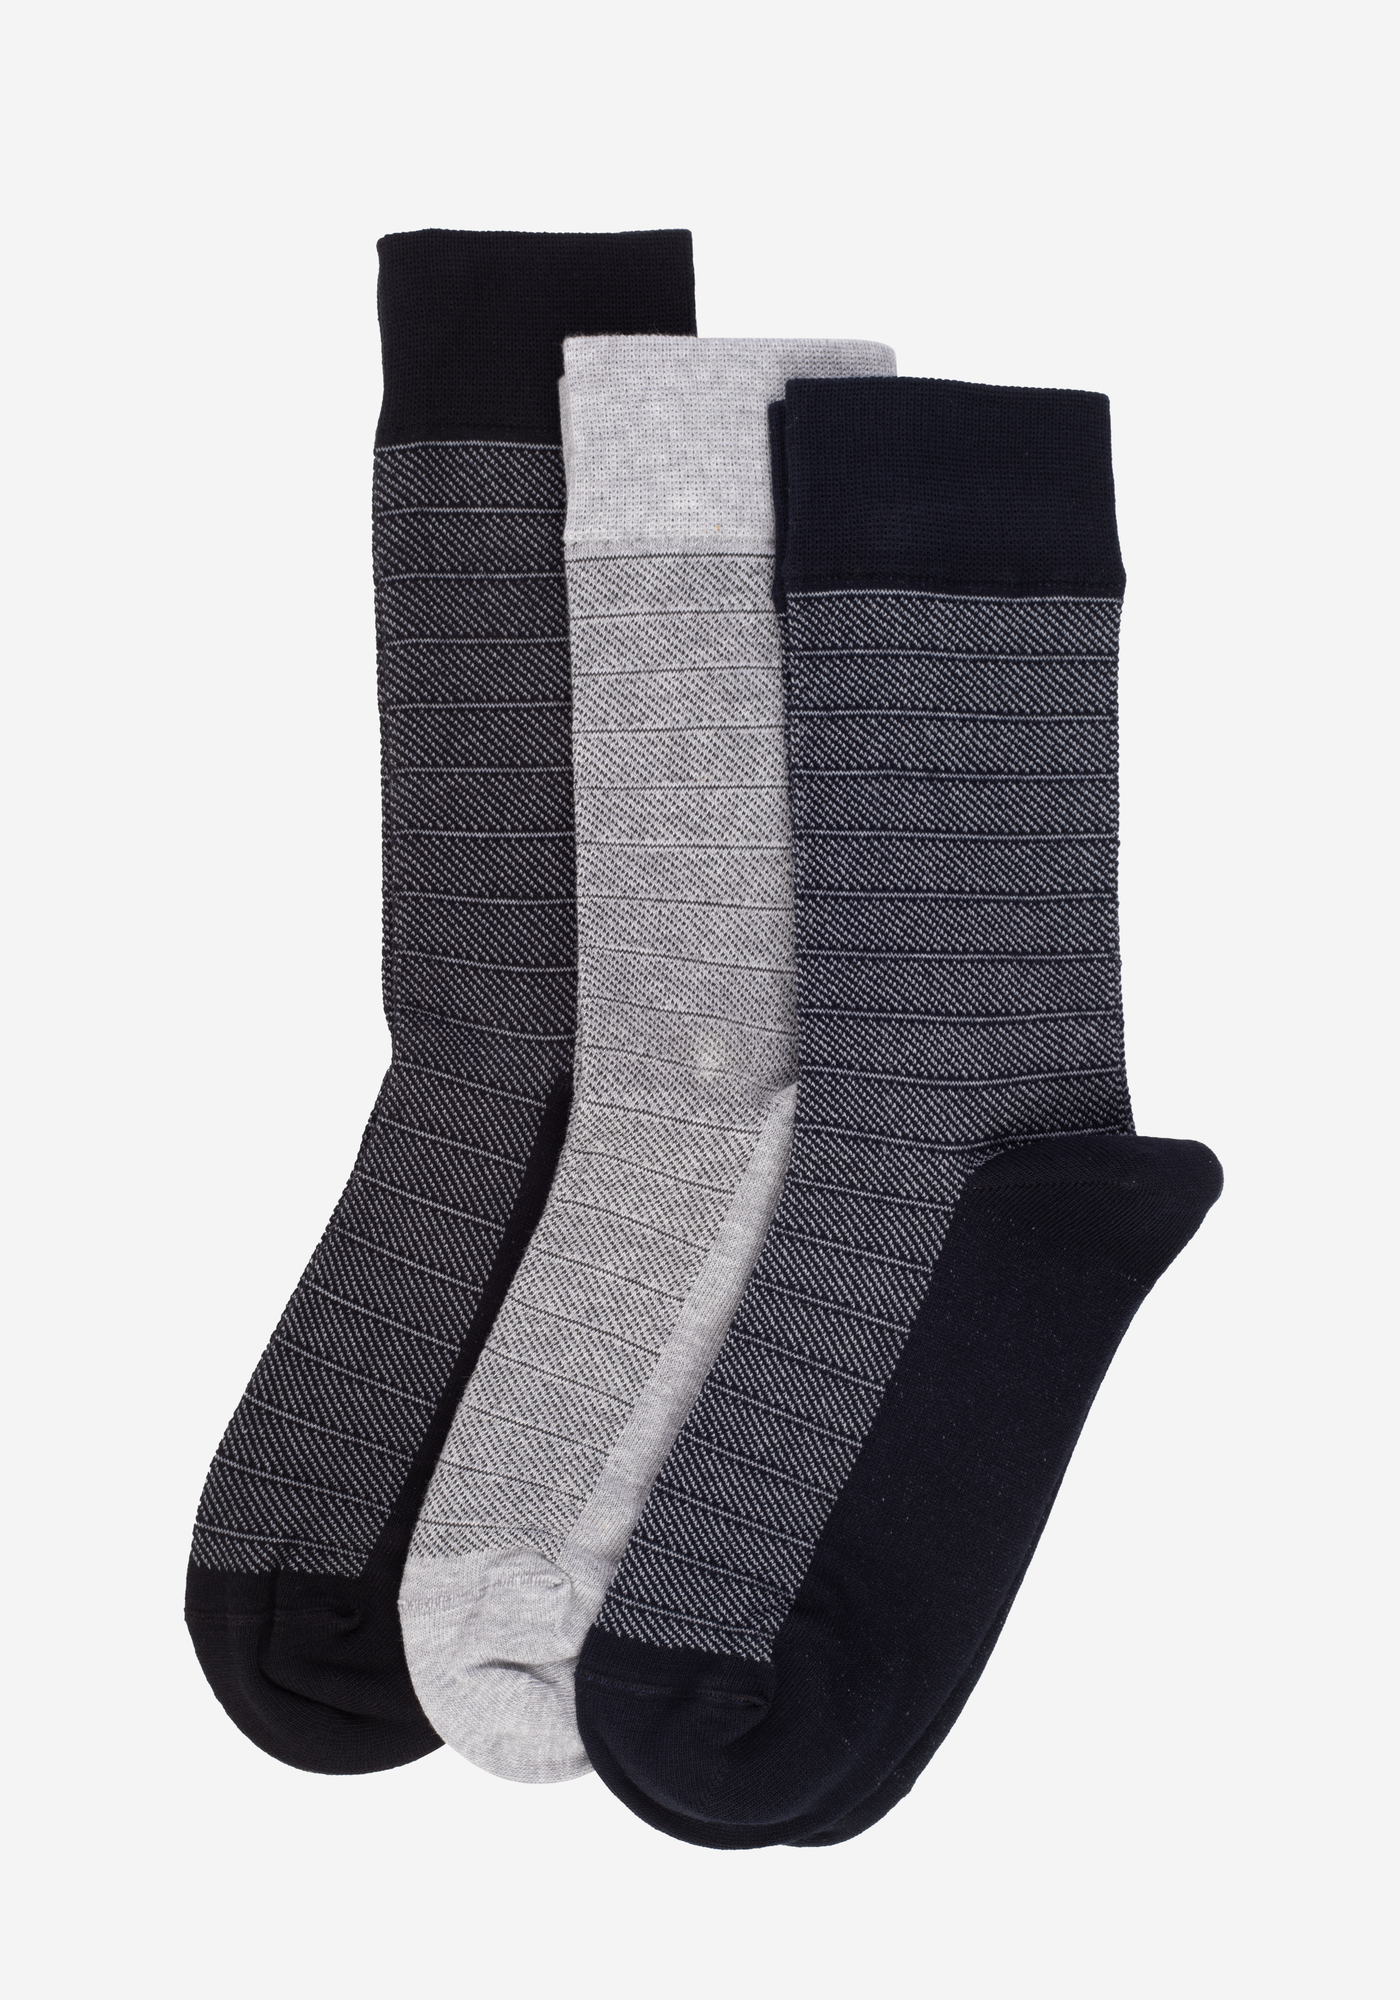 P3*1-301-2 / 3 Long Socks Pack